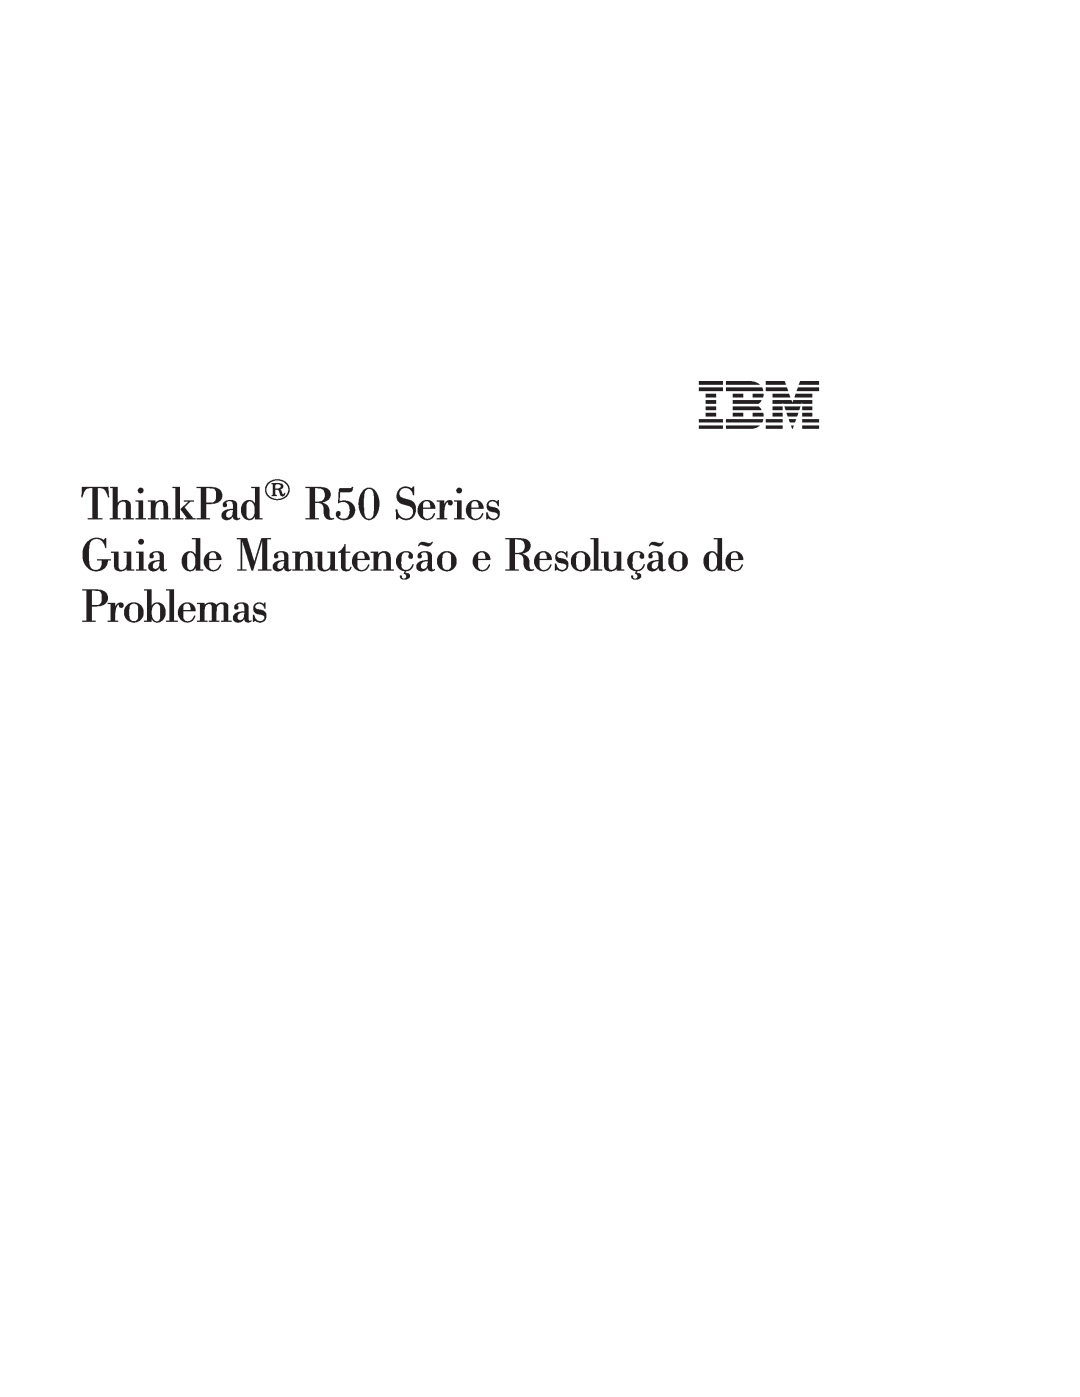 IBM manual ThinkPad R50 Series, A P Γu 